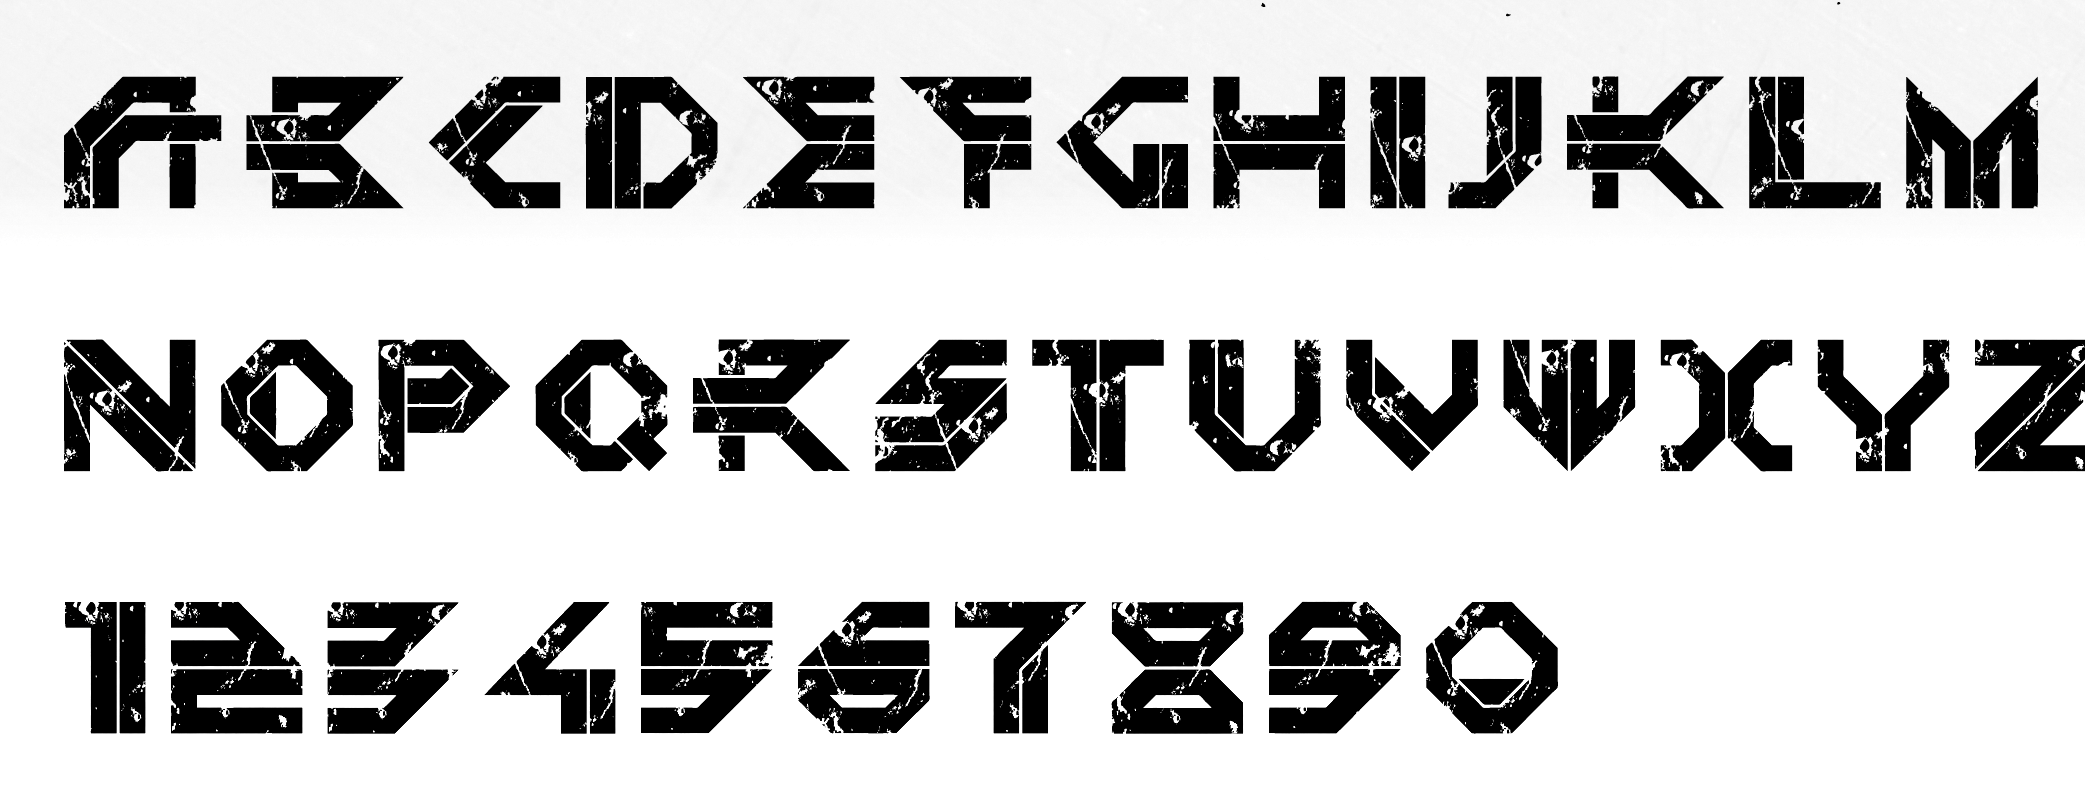 Шрифты в формате ttf. Уникальный шрифт. Необычные шрифты. Технологичный шрифт. Шрифт в стиле киберпанка.